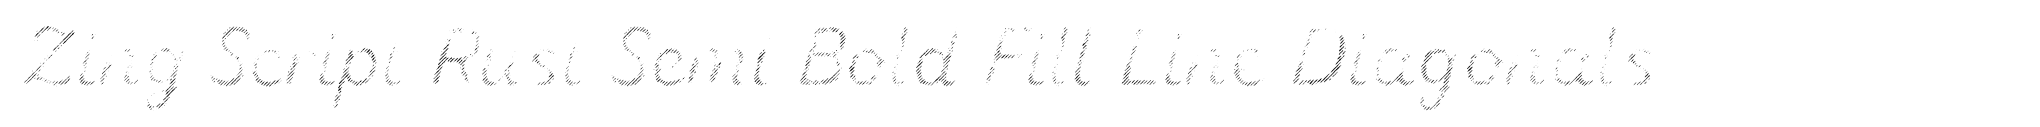 Zing Script Rust Semi Bold Fill Line Diagonals image